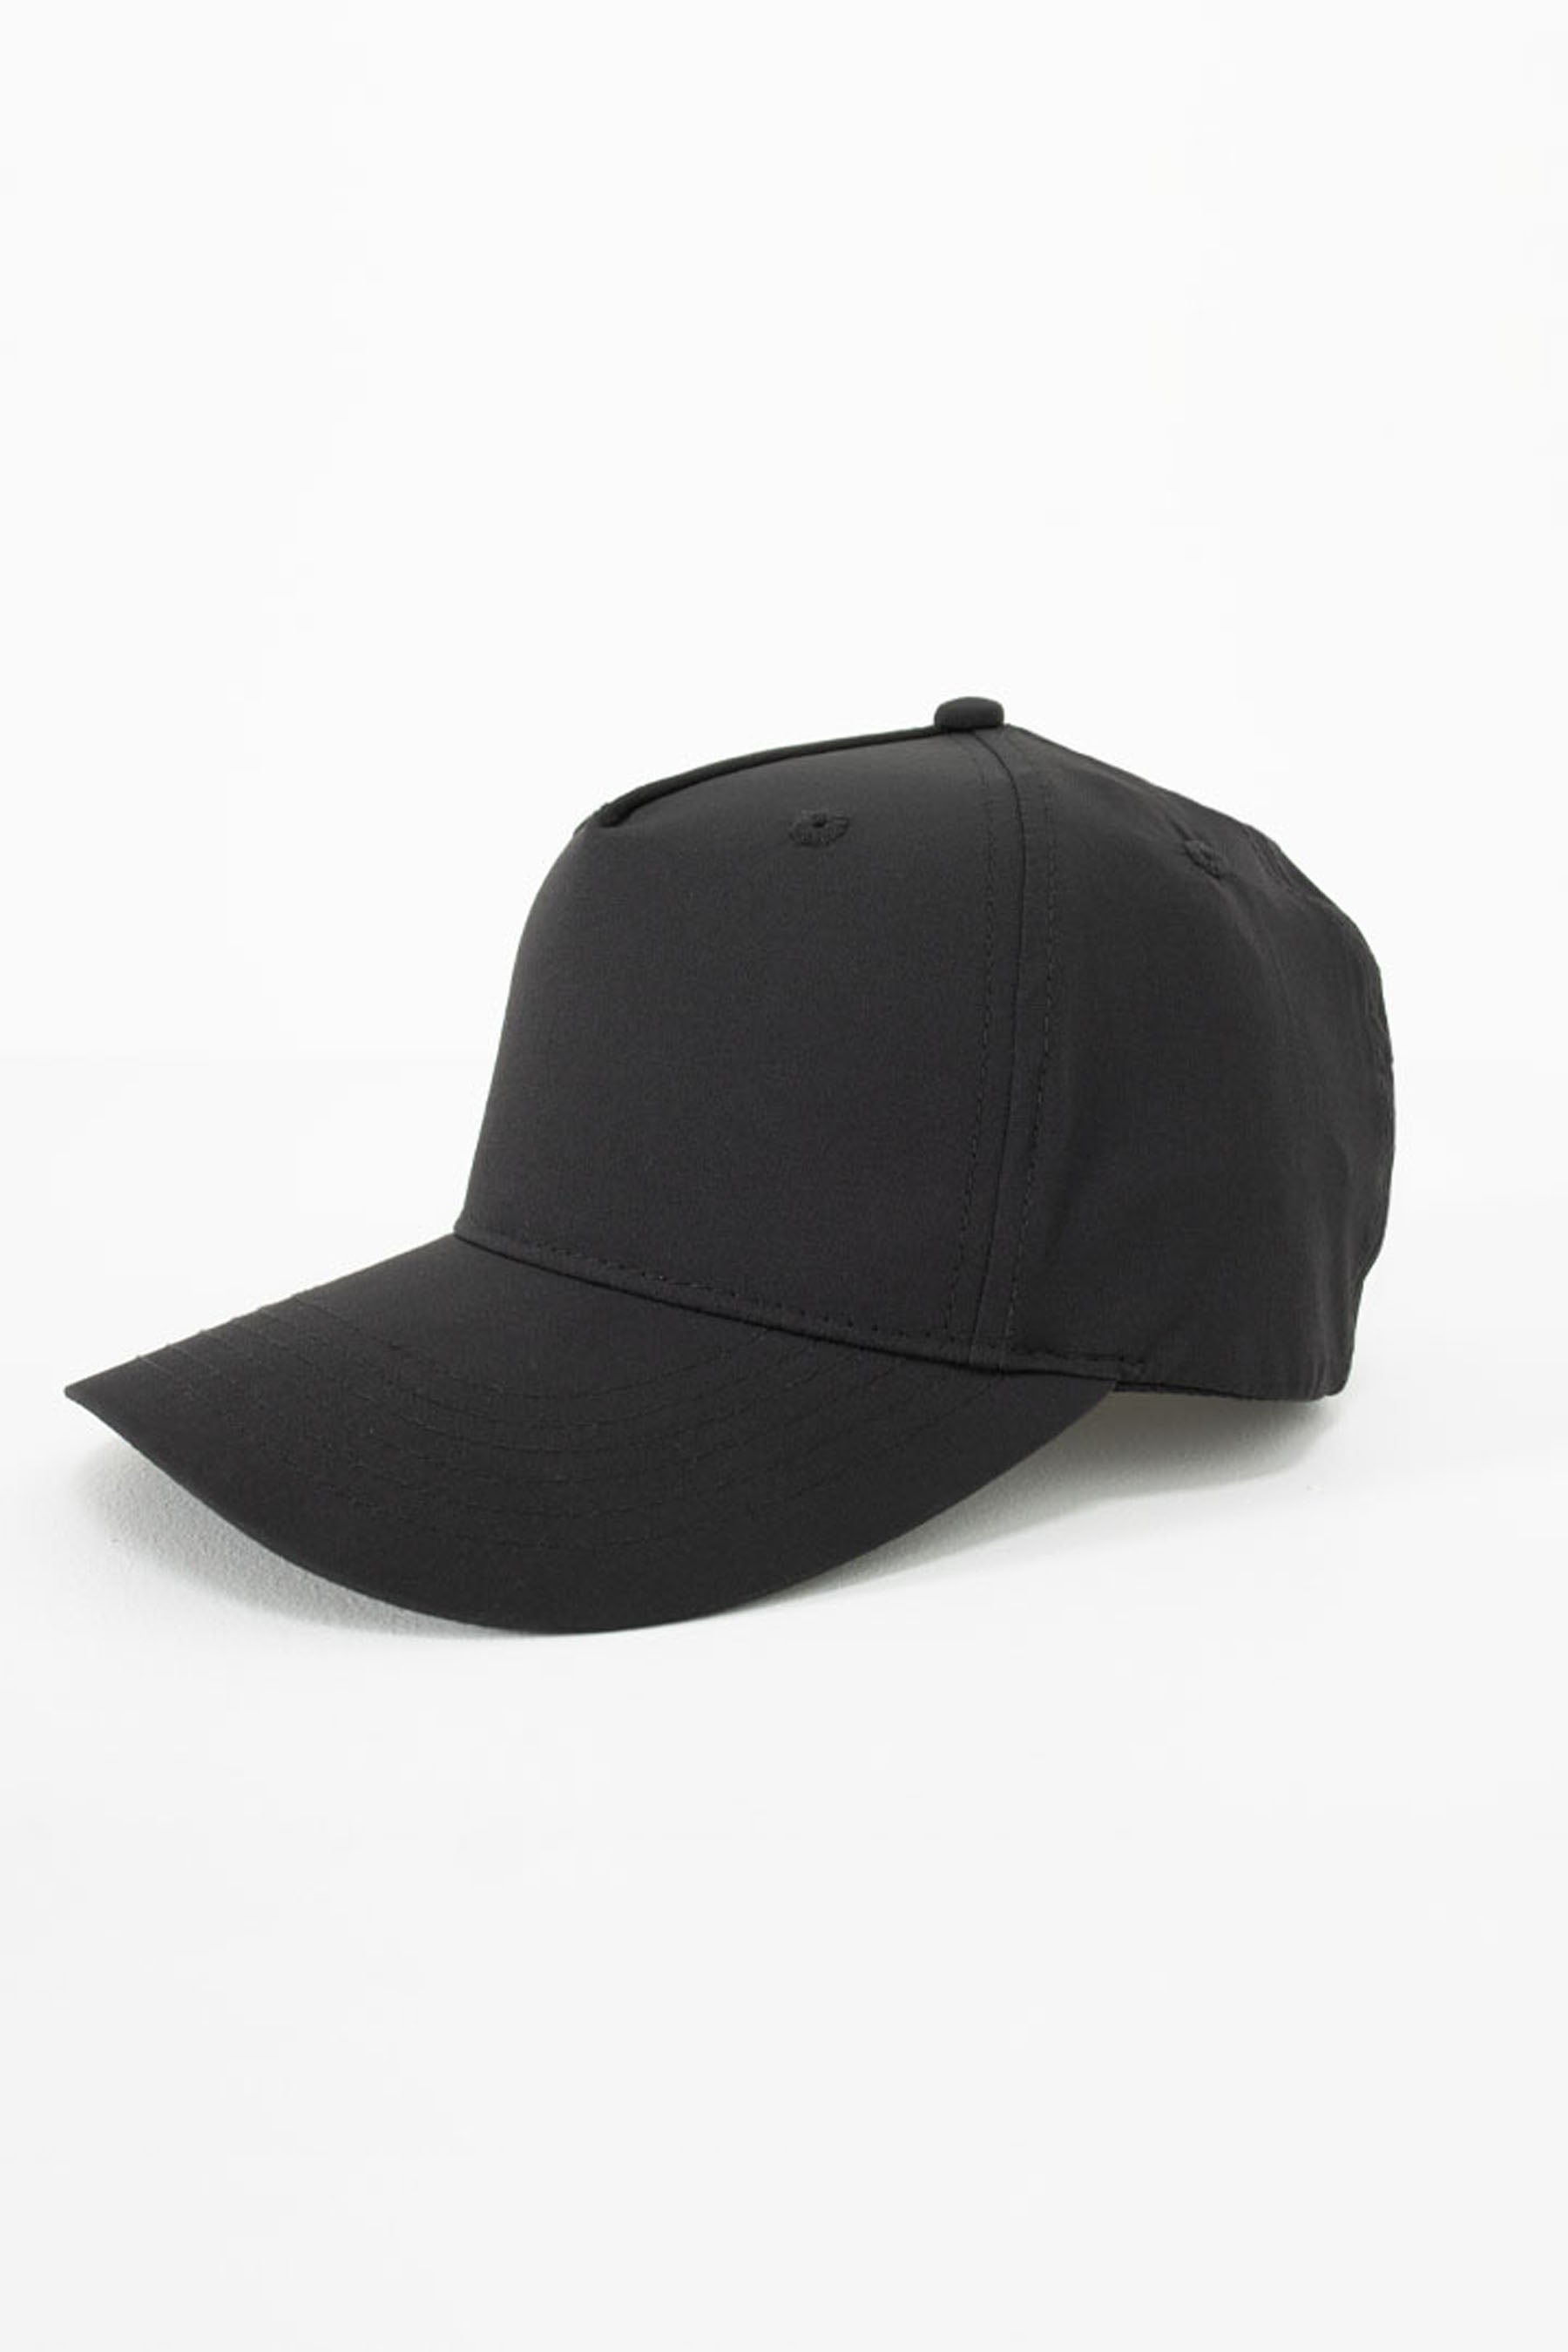 JP Jetlite Mens Workwear Cap - Black